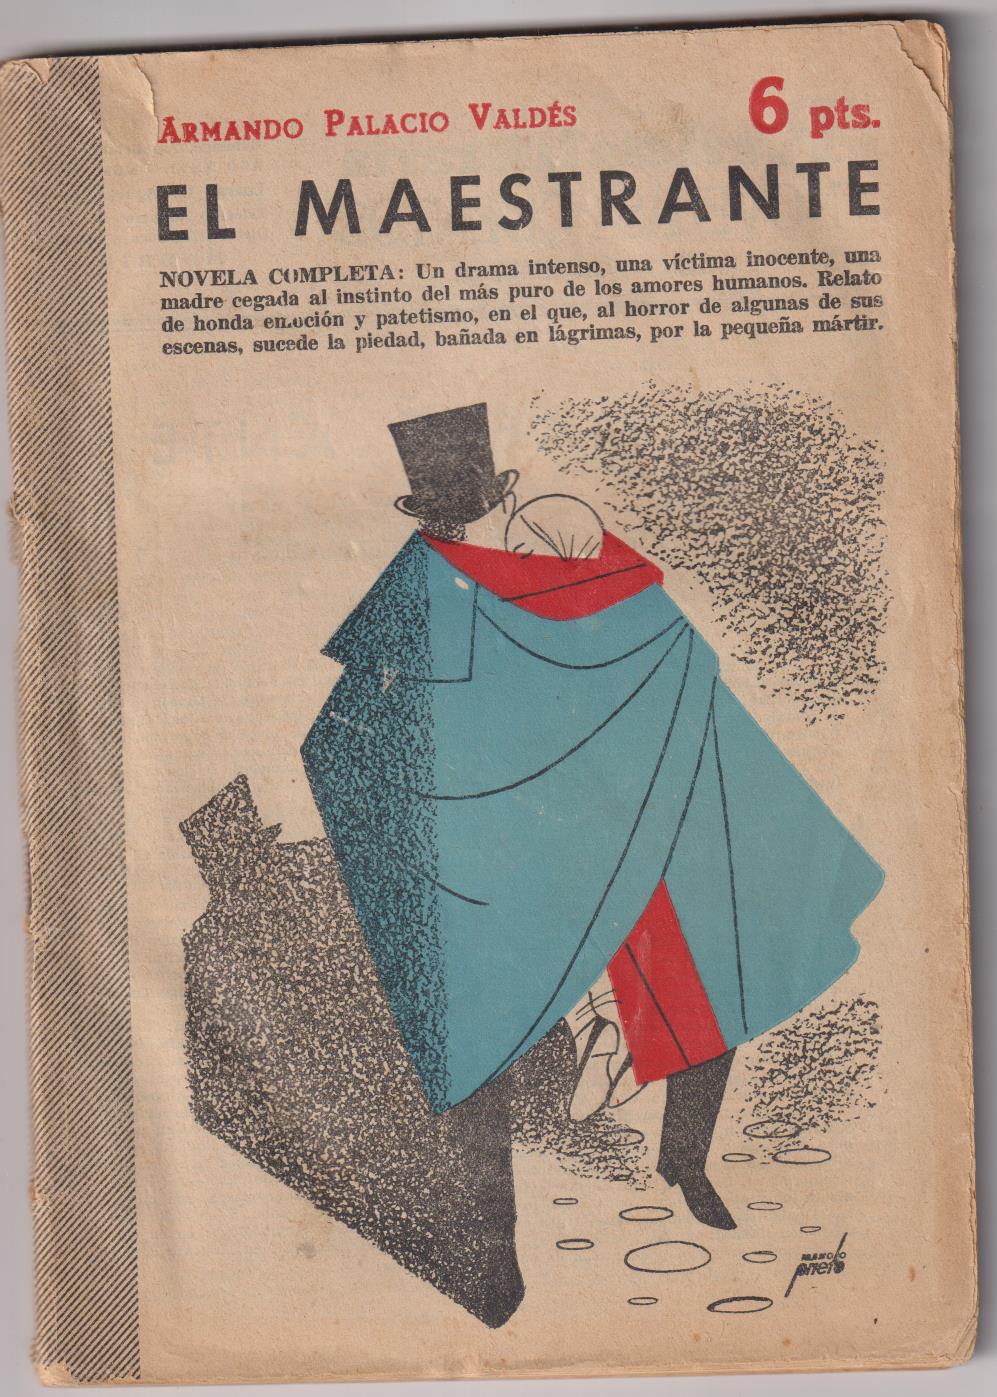 Revista Literaria Novelas y Cuentos nº 1217. A. palacio Valdés. El Maestrante, año 1954